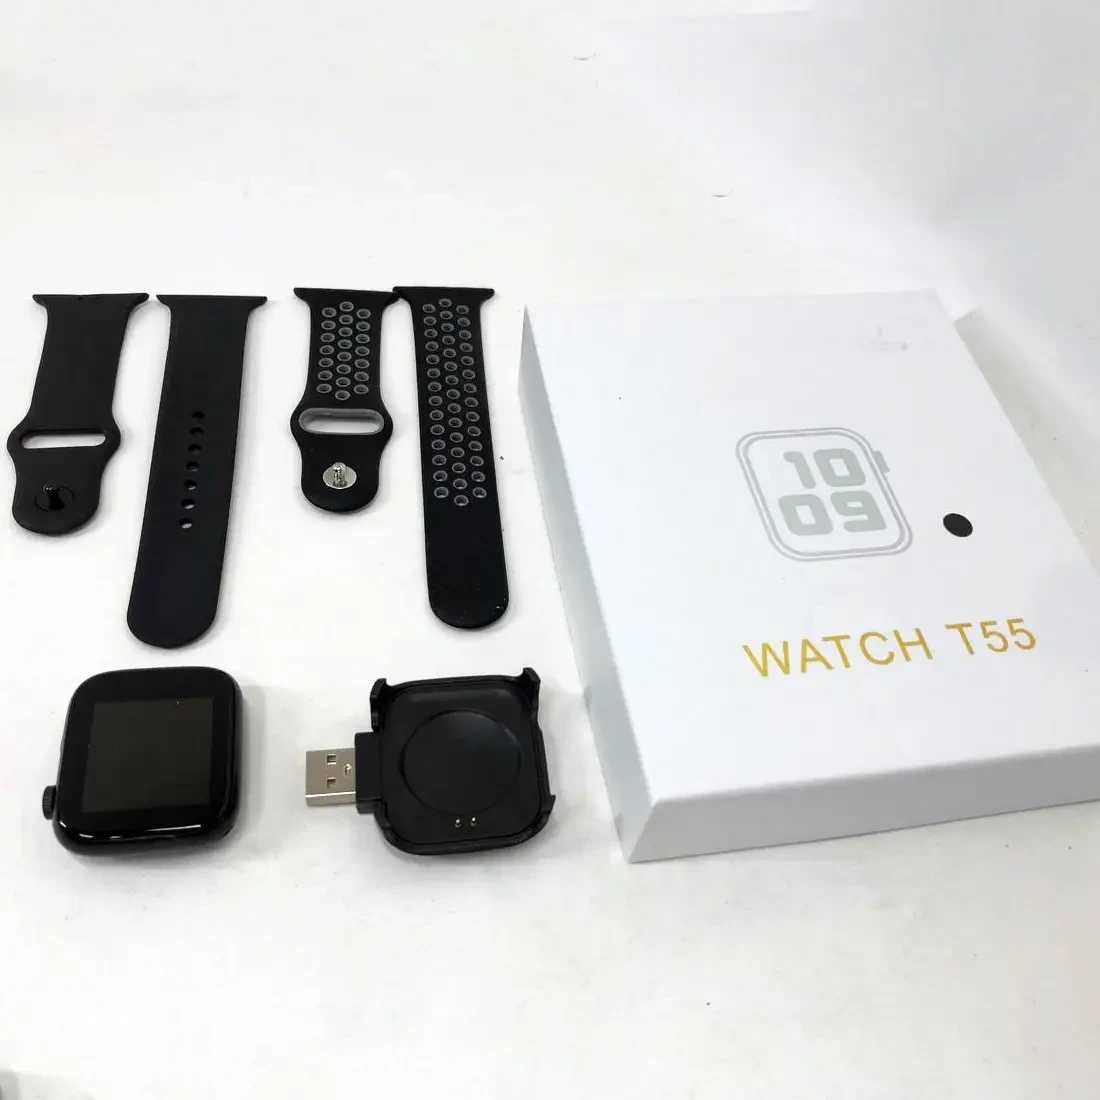 Шок цена! Умные смарт часы |Smart Watch T55 + 2 ремешка.